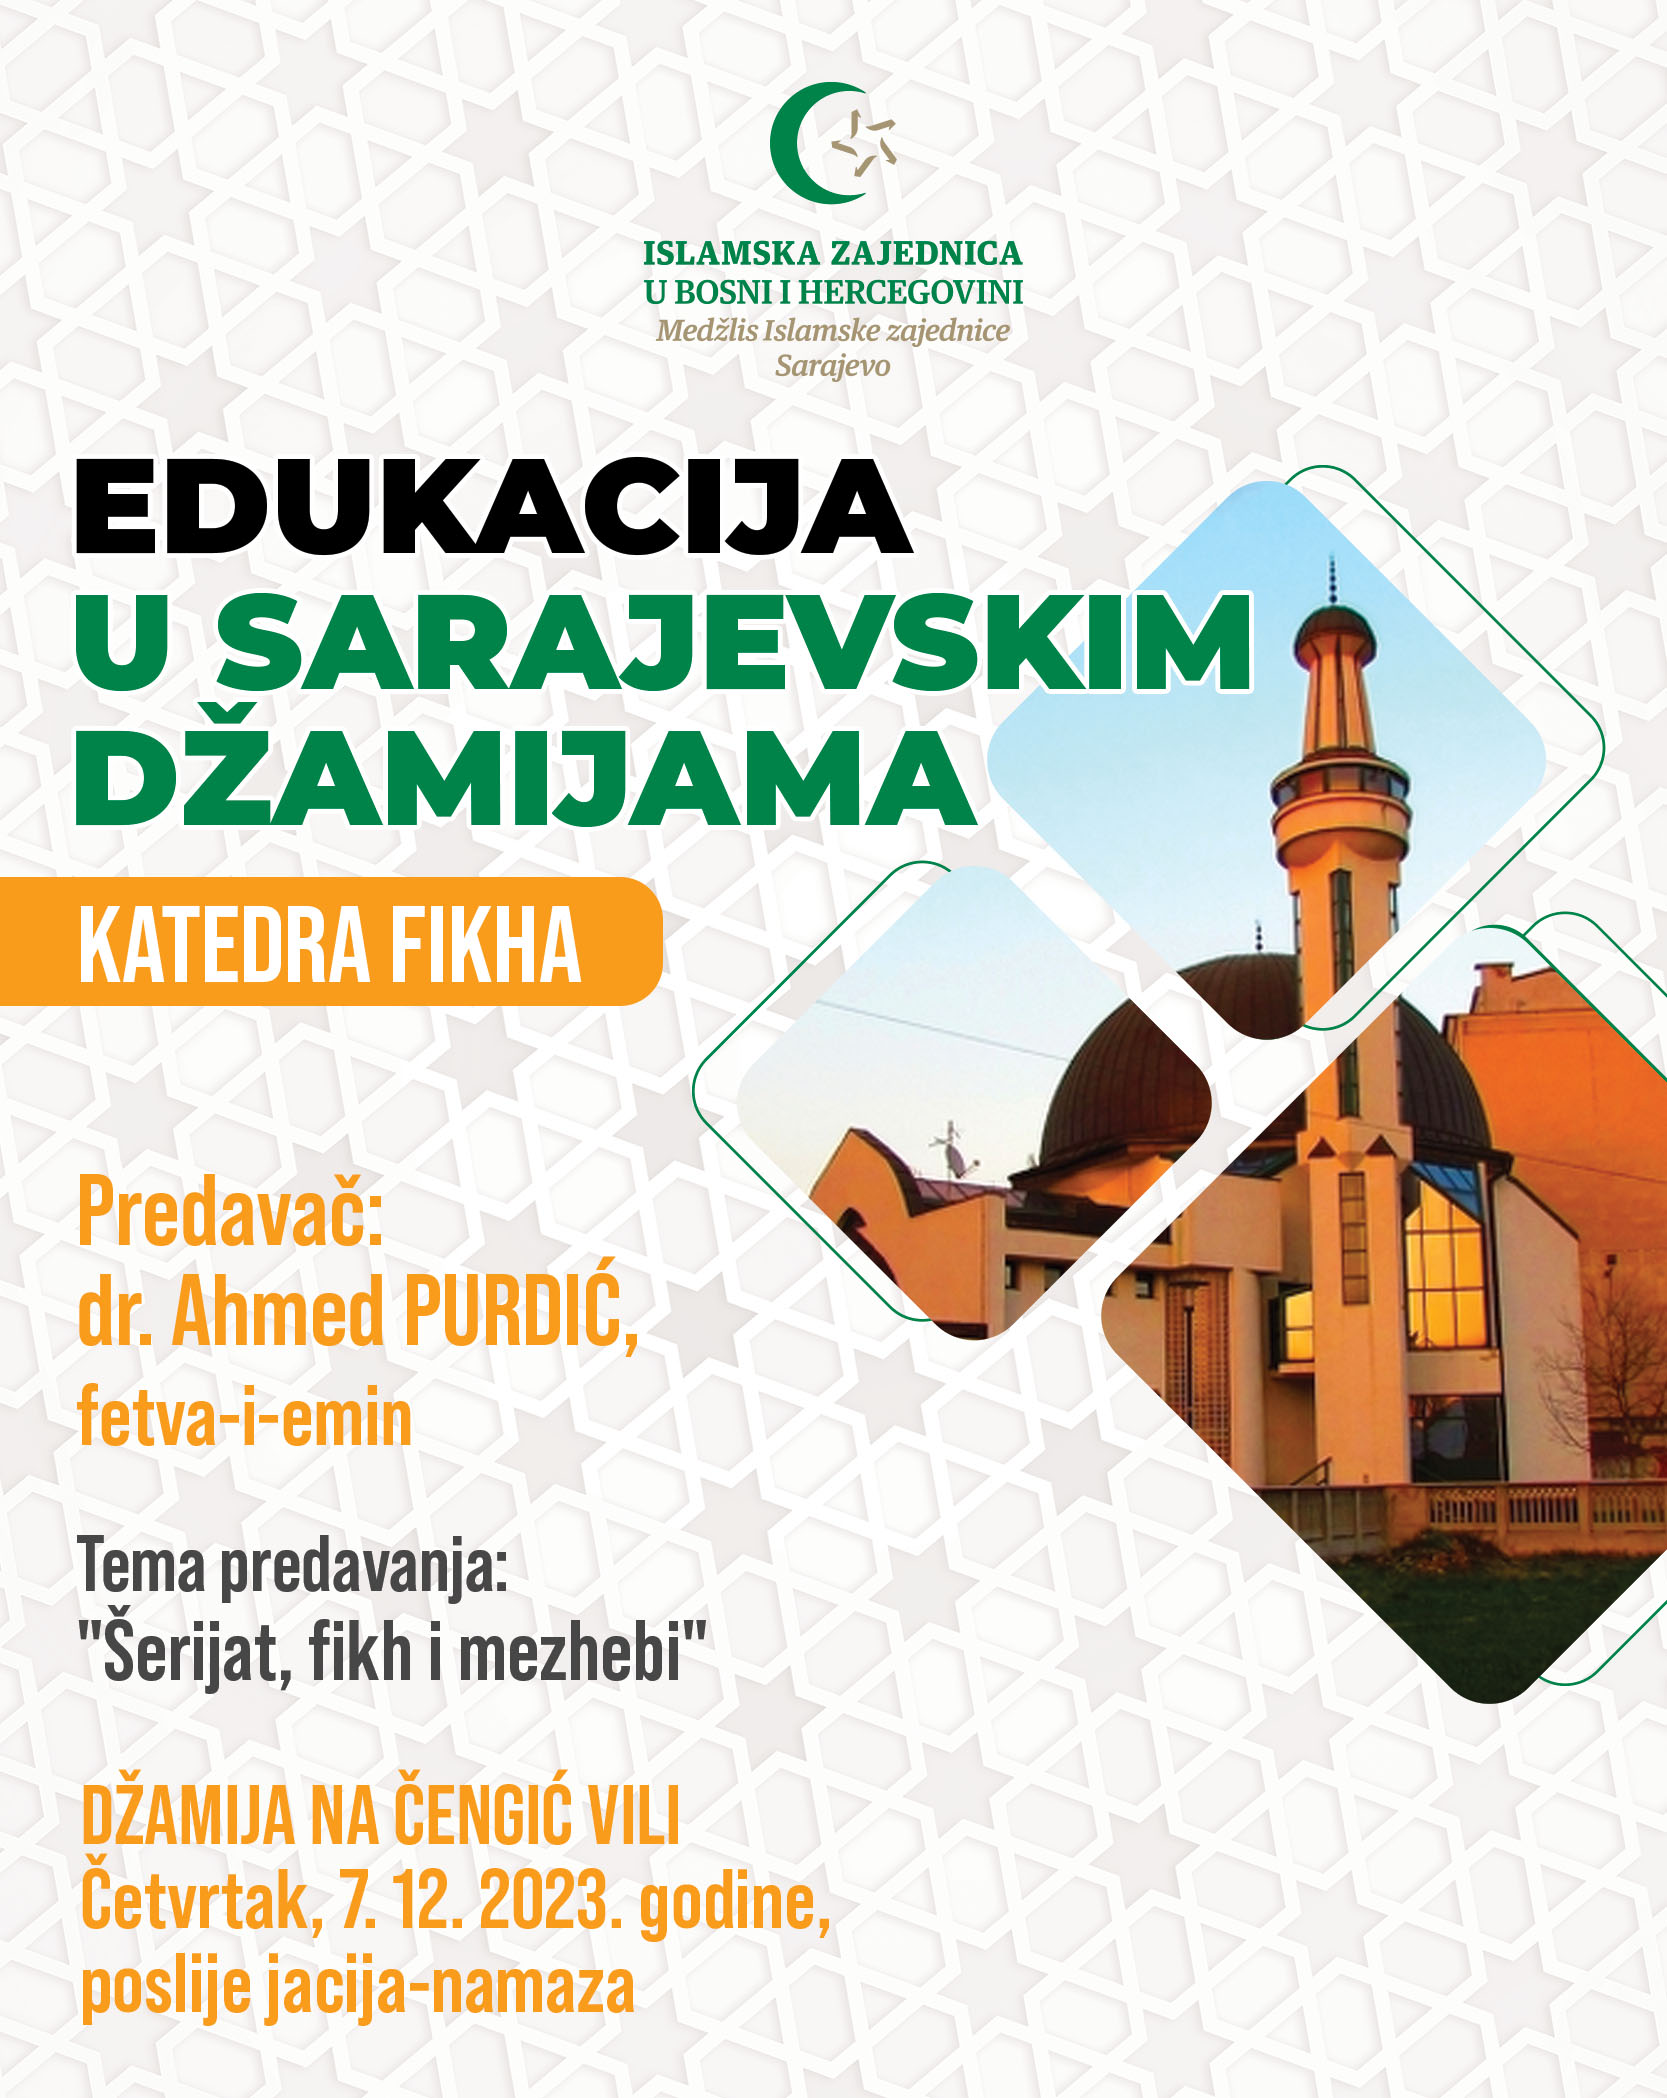 Edukacija u sarajevskim džamijama - Medzlis 2022 - katedra fikha - CENGIC VILA